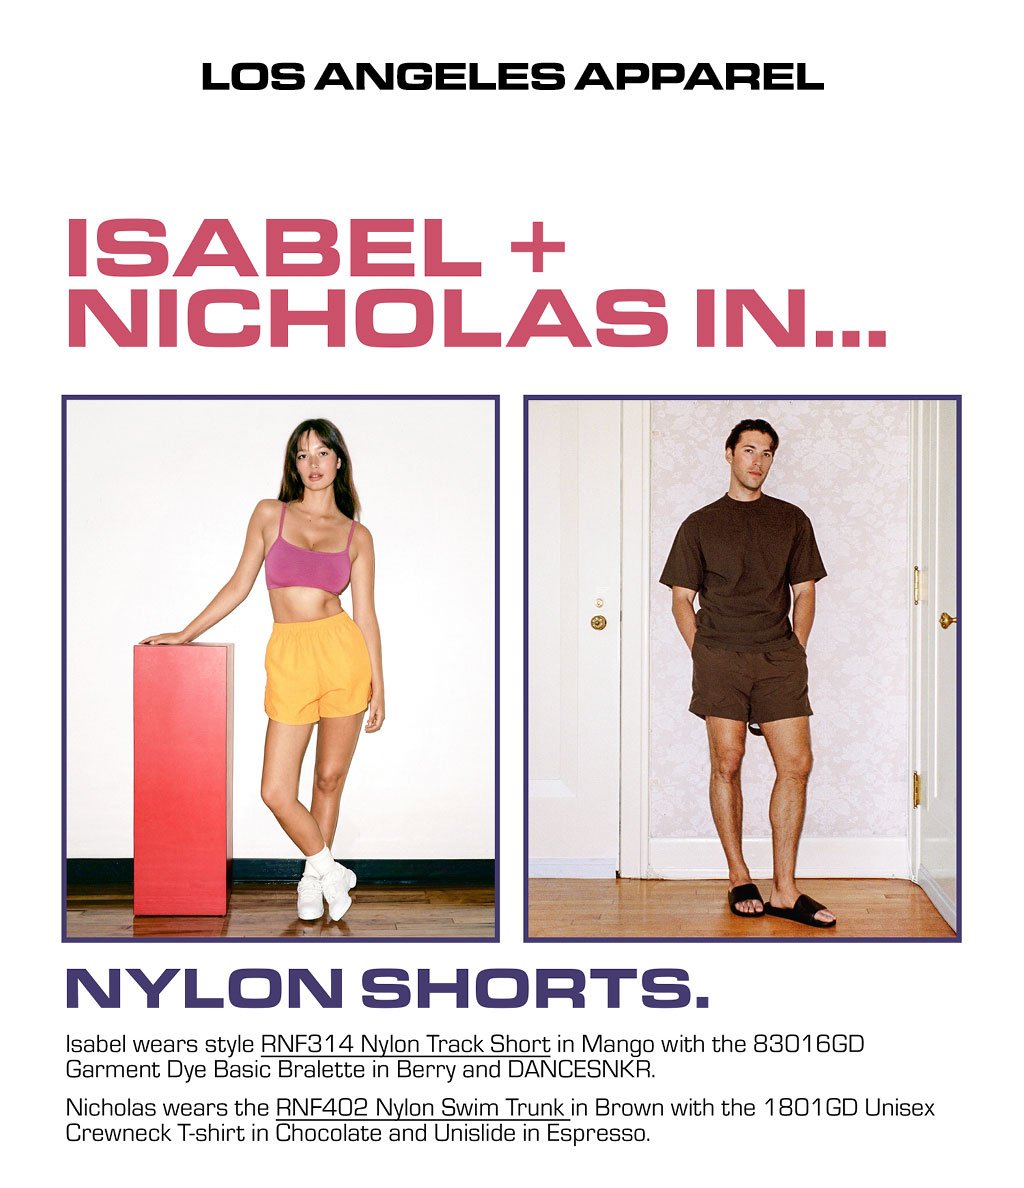 LA Apparel: Isabel + Nicholas in